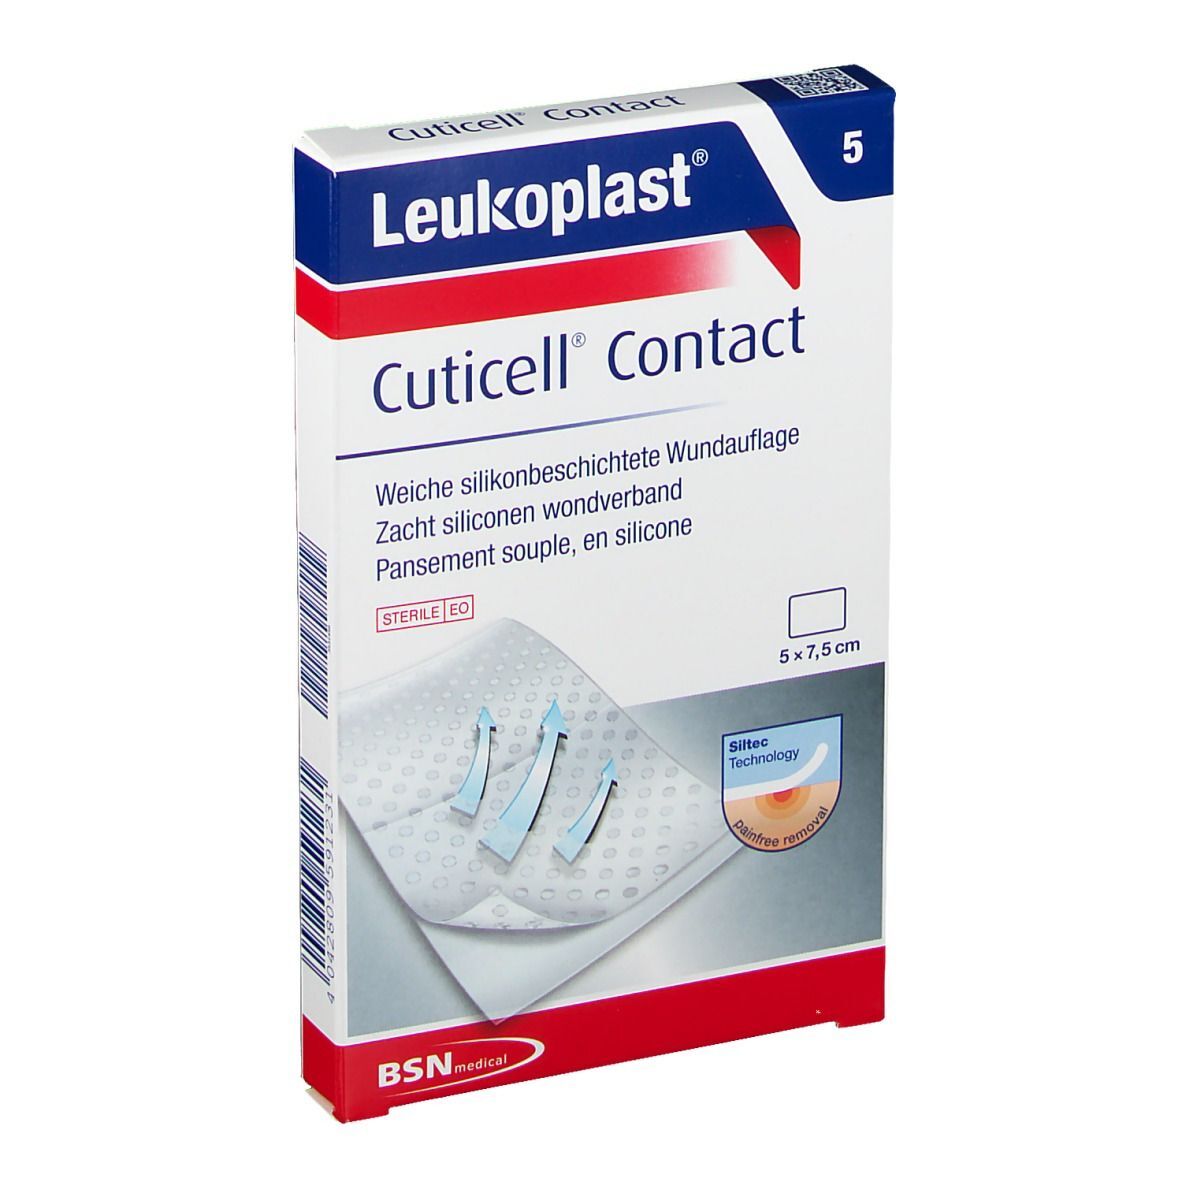 BSN Medical Leukoplast® Cuticell® Contact weiche silikonbeschichtete Wundauflage 5 x 7,5 cm